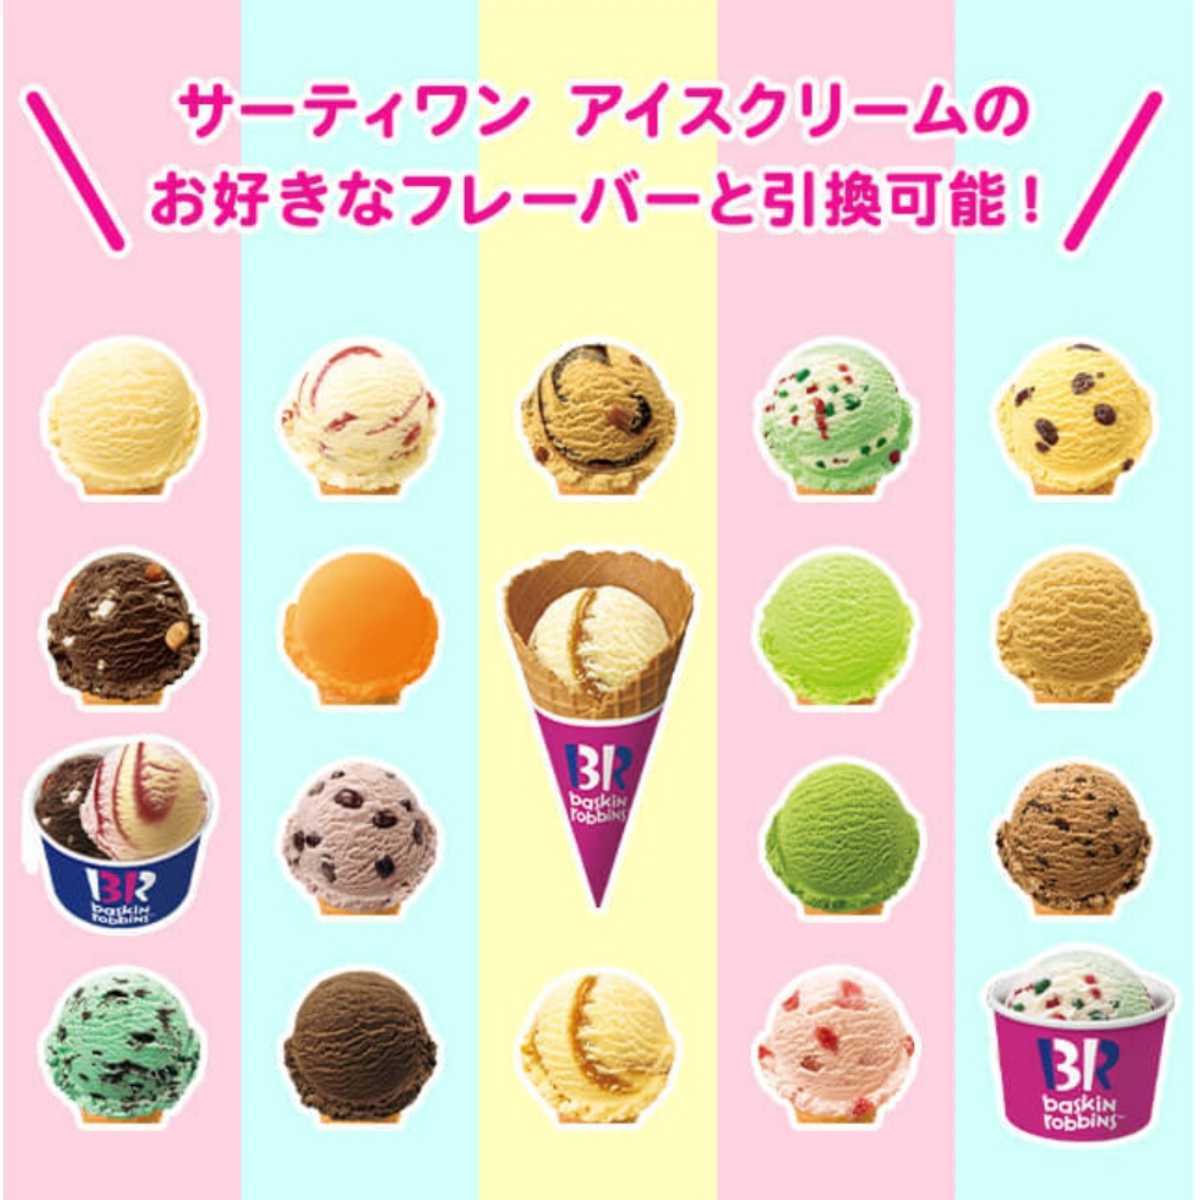 【新品】サーティワン デジタルギフト券 1,000円分 Baskin Robbinsの画像3